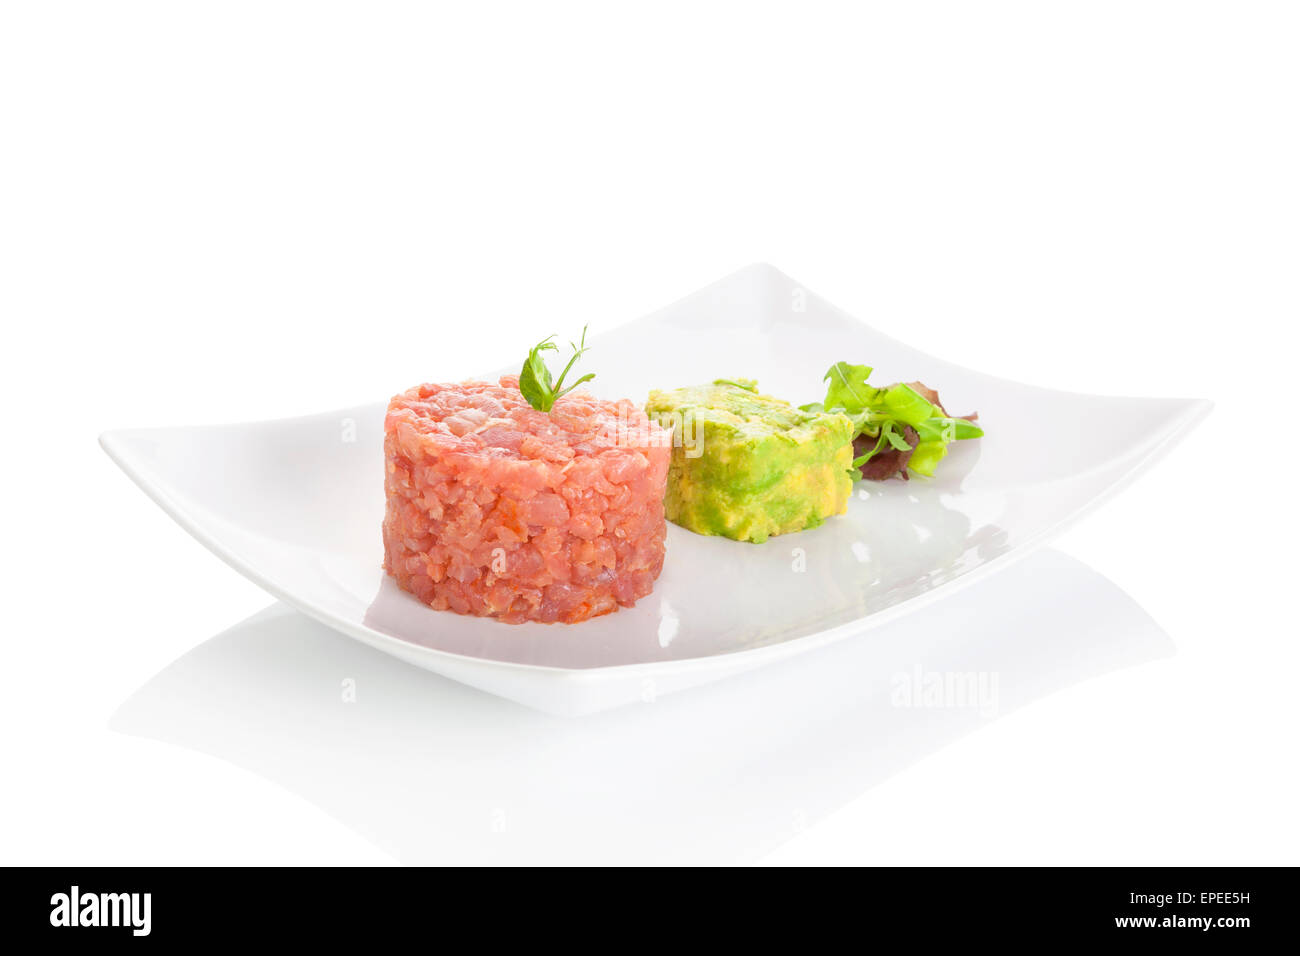 Leckere Thunfisch-Tatar mit Avocado-Dip und frischem grünen Salat auf Teller auf weißem Hintergrund. Gehobene Küche. Stockfoto